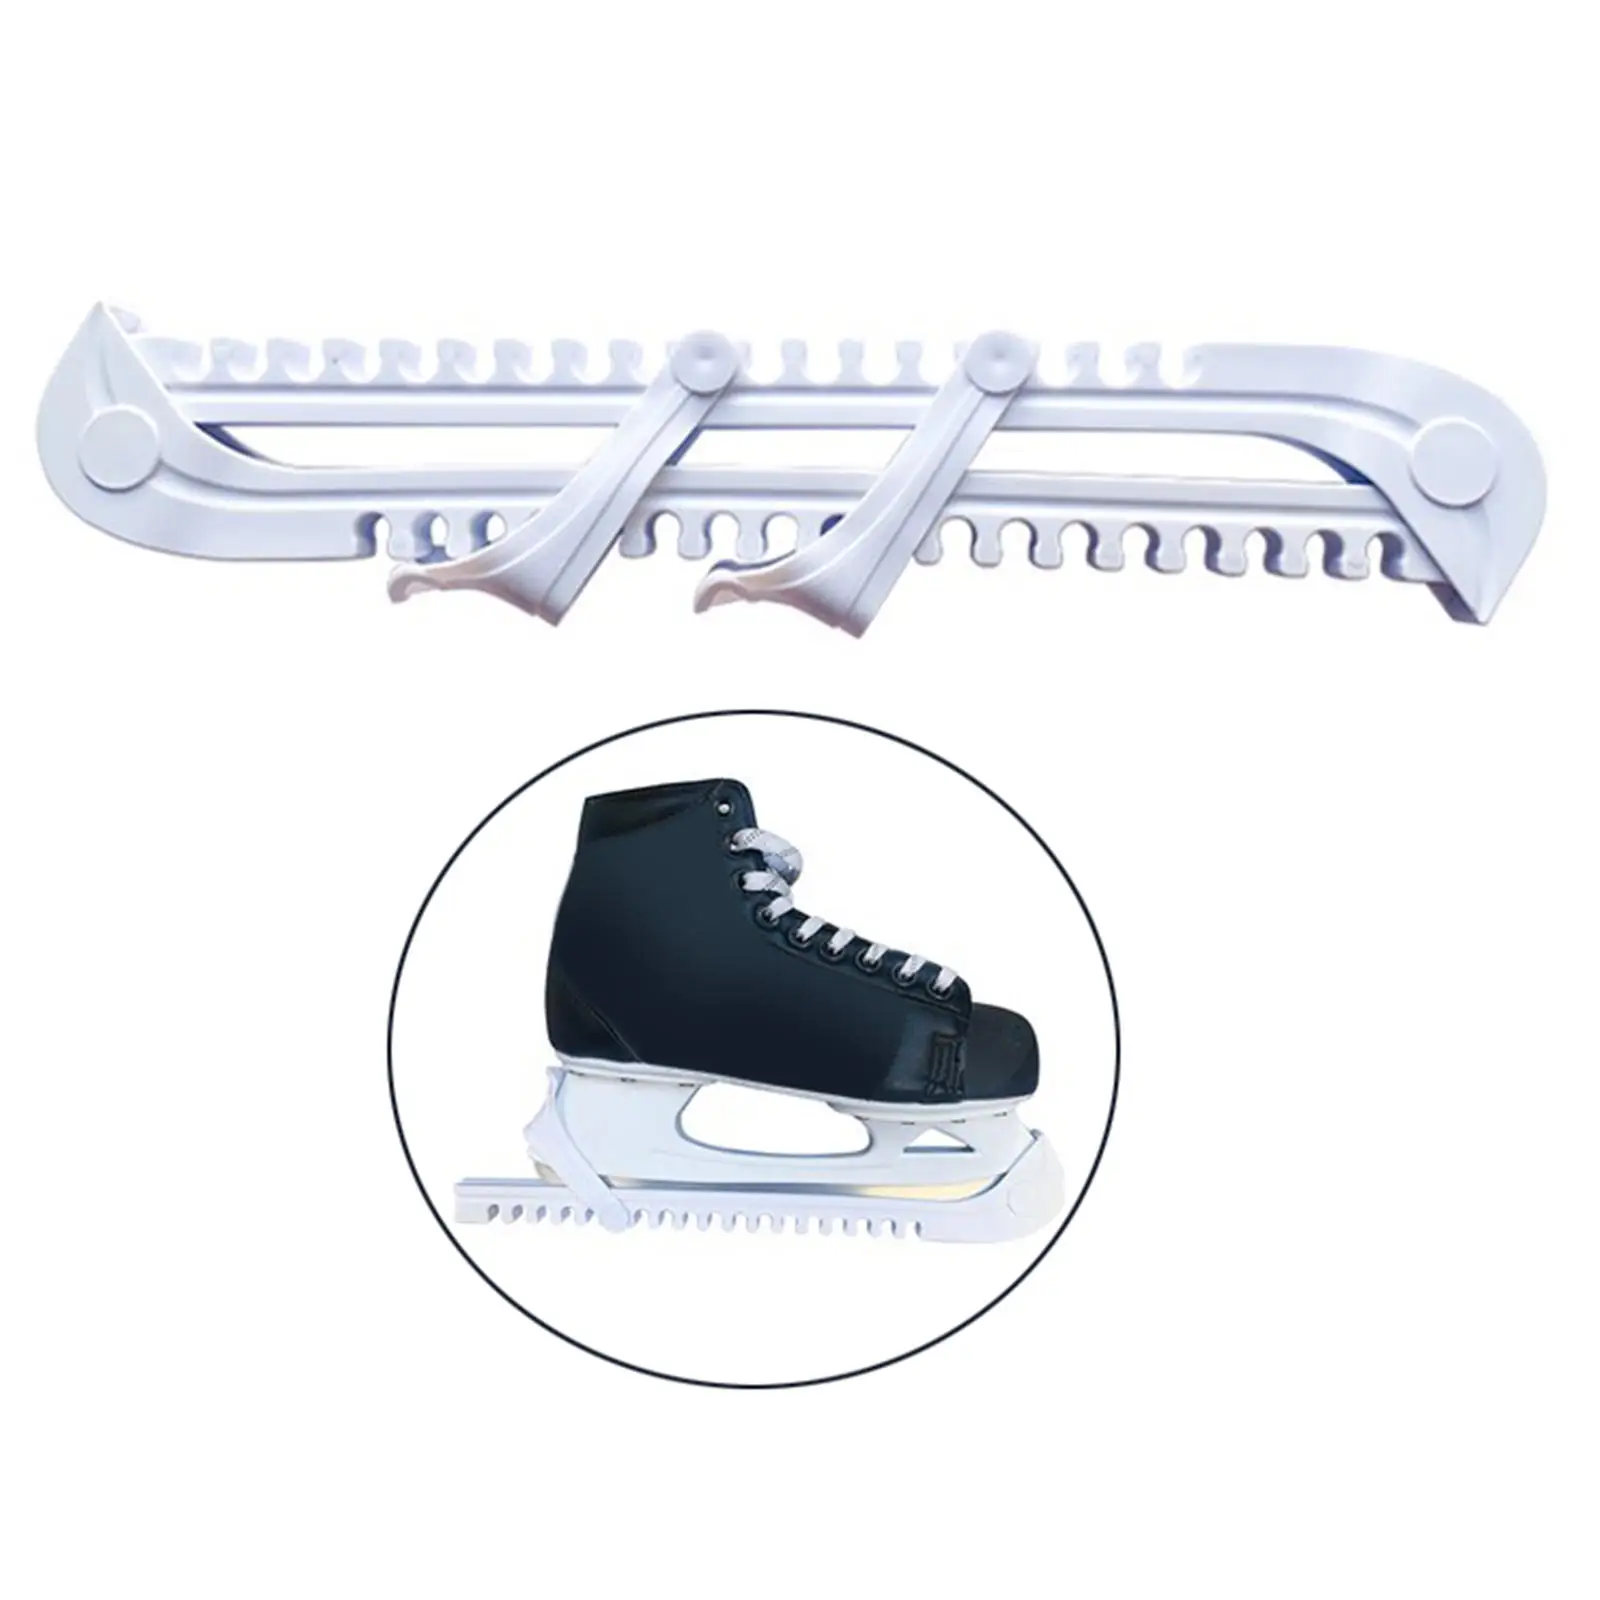 acortable Protector para cuchillas adecuado para todos los tamaños resistente LOWW Protector de cuchillas para patines de hockey sobre hielo